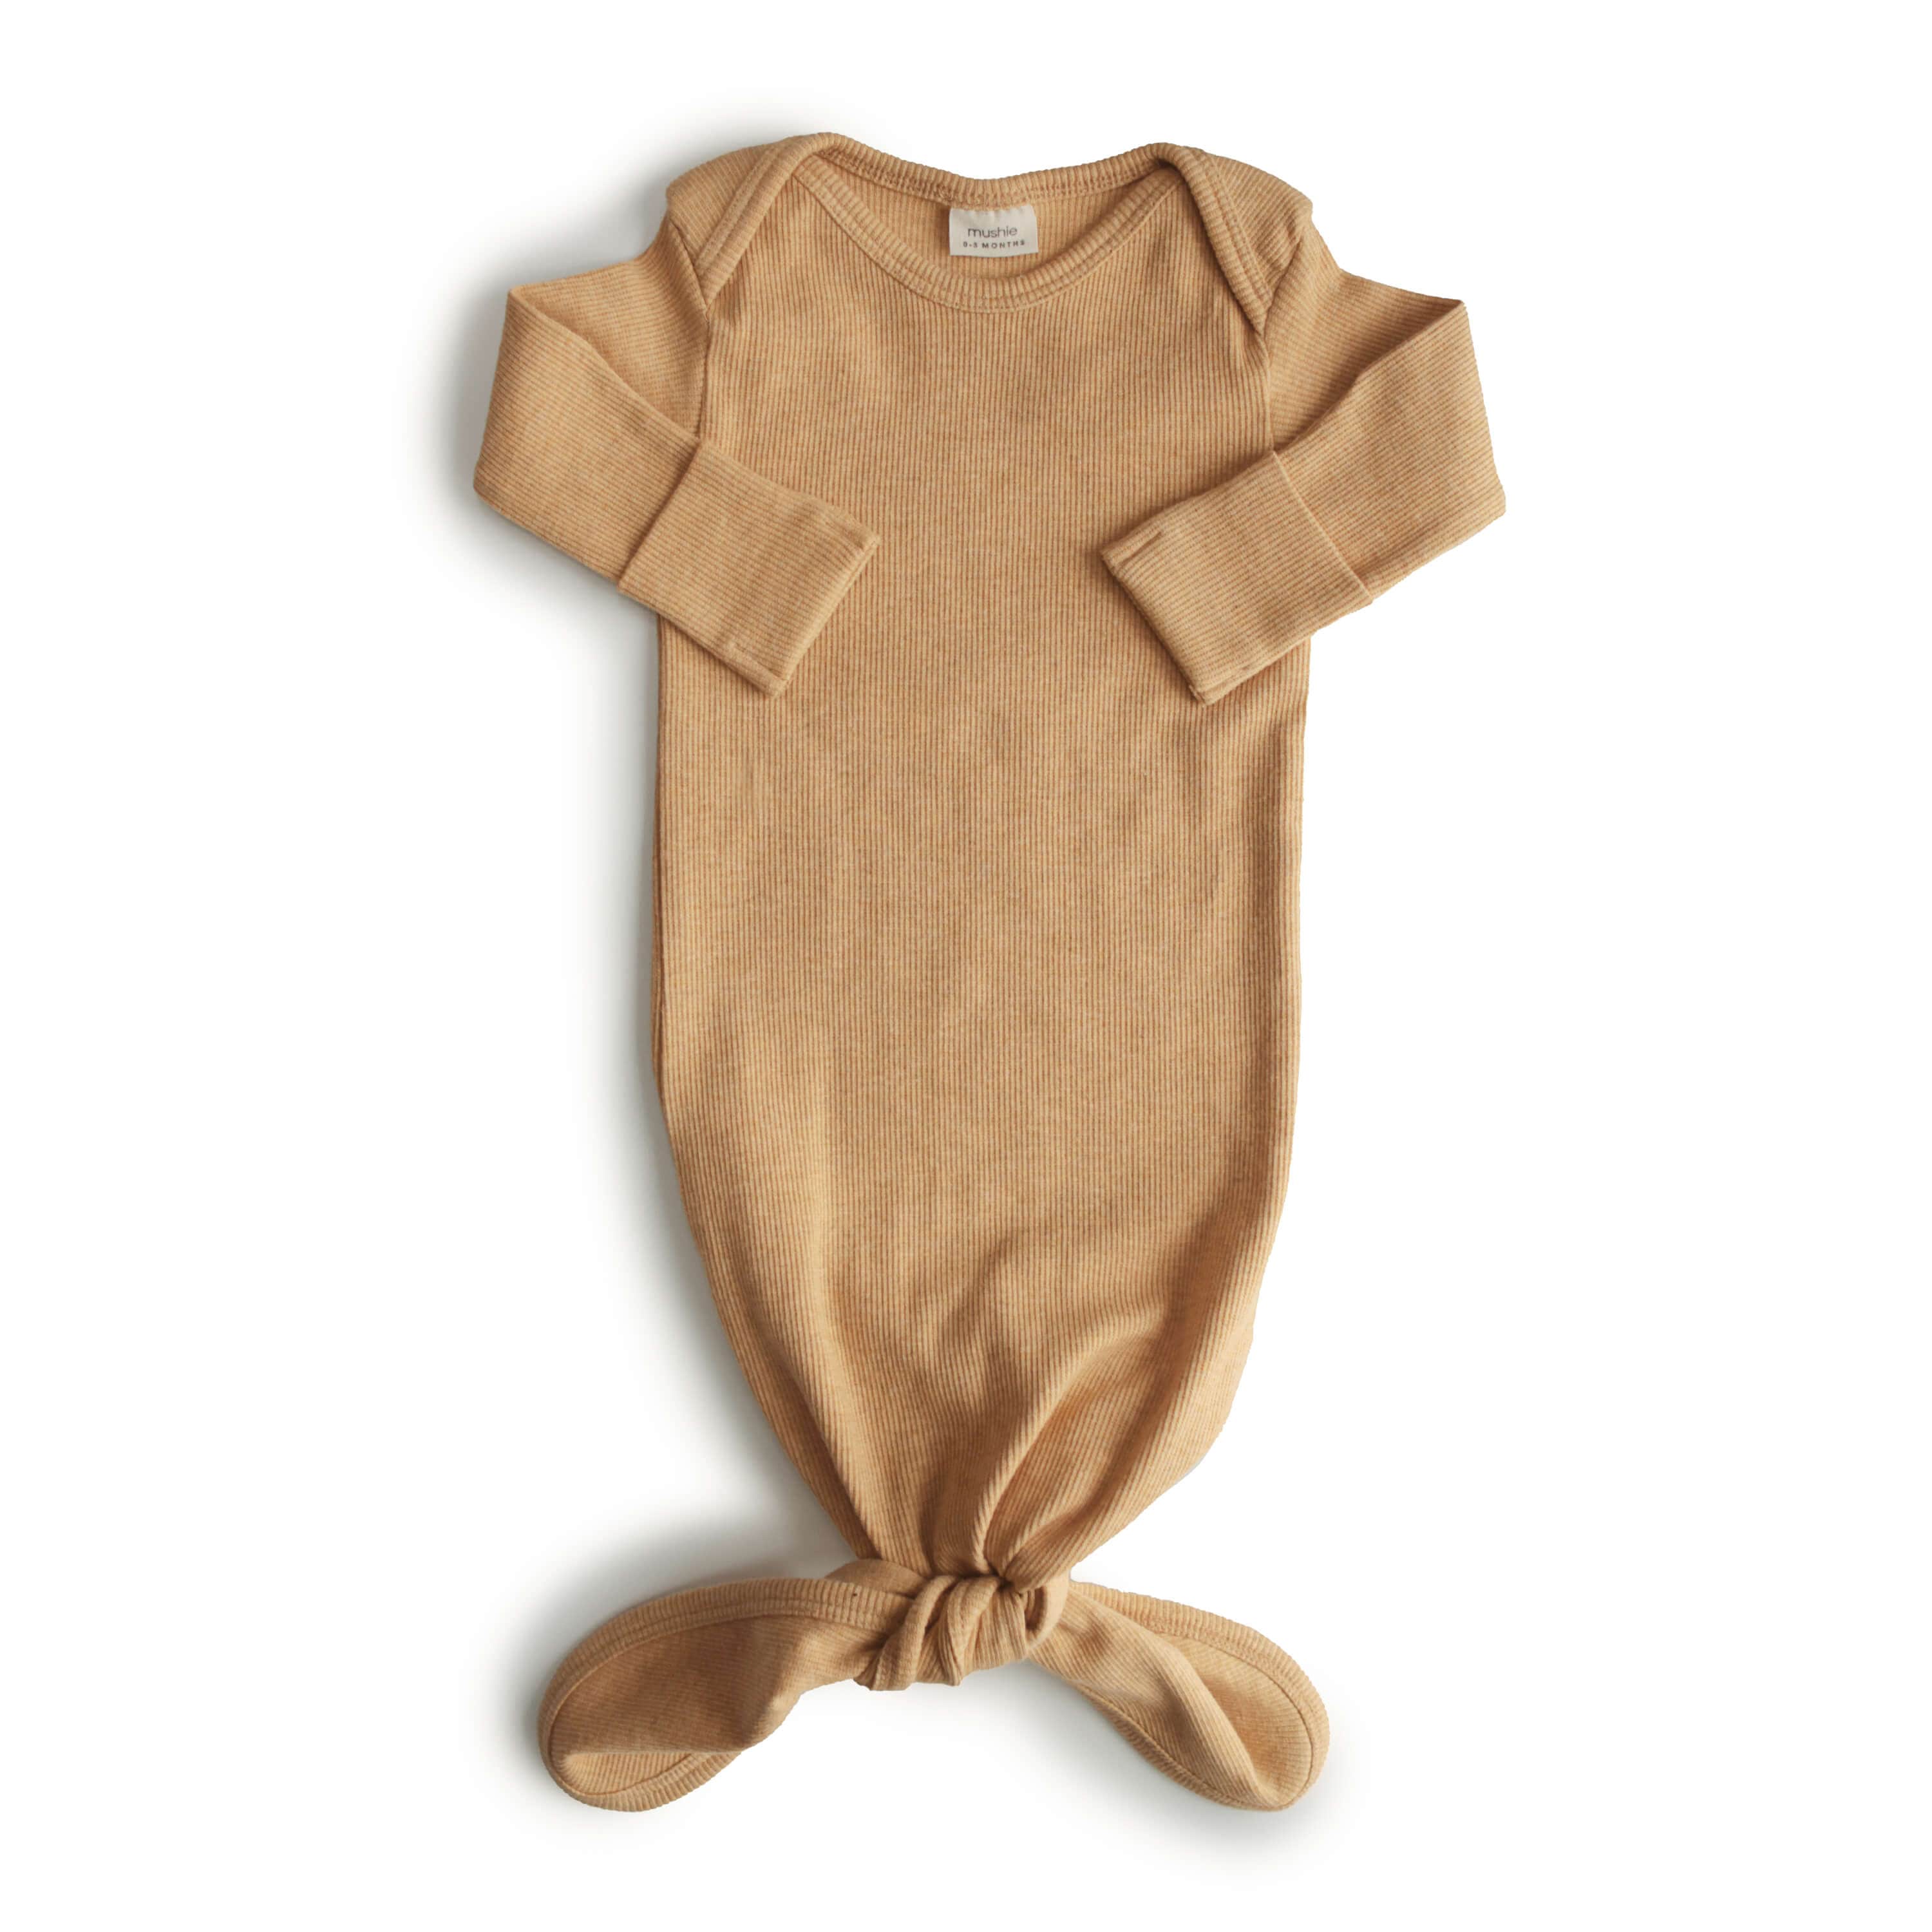 Ribbed baby dress "Mustard